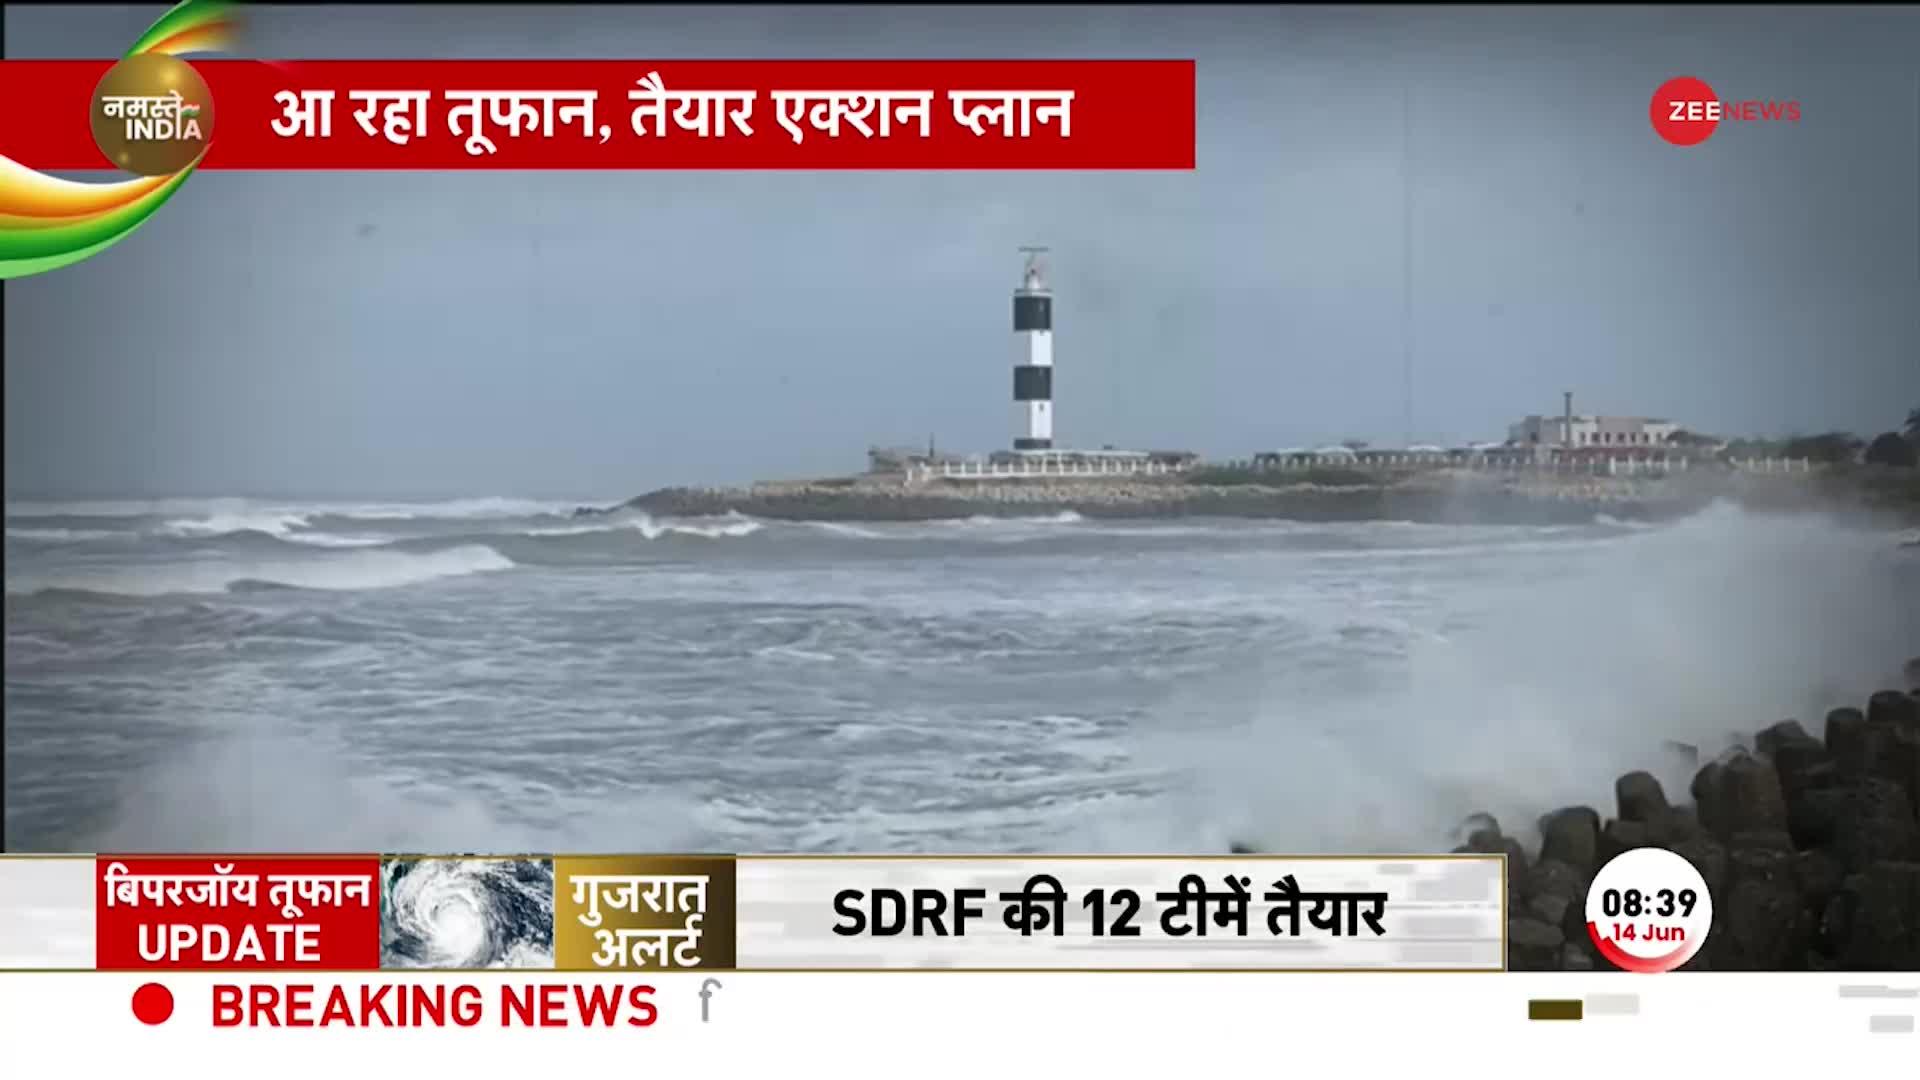 Biporjoy Cyclone: कुछ ही घंटों में गुजरात के तटों से टकराएगा 'बिपारजॉय', जानिए तूफान कहां तक आया